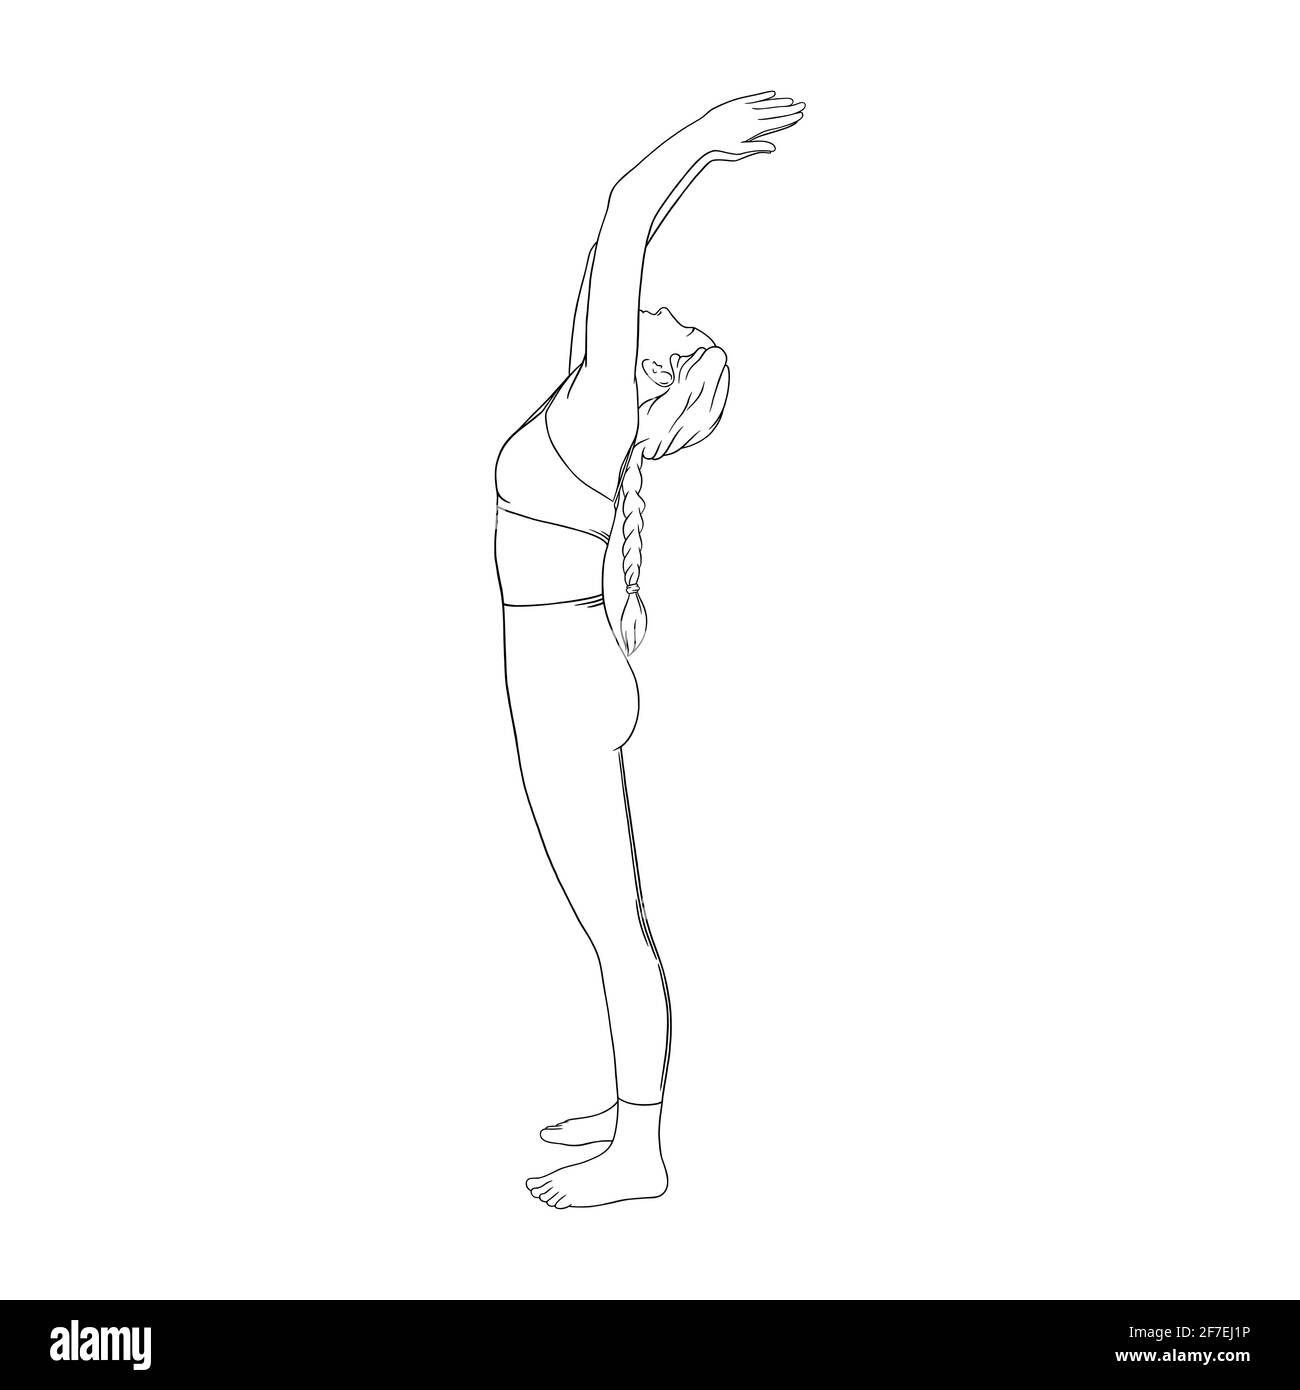 Sole salutante yogi donna. Hatha yoga schiena piega posa. Illustrazione vettoriale incisa su sfondo bianco Illustrazione Vettoriale